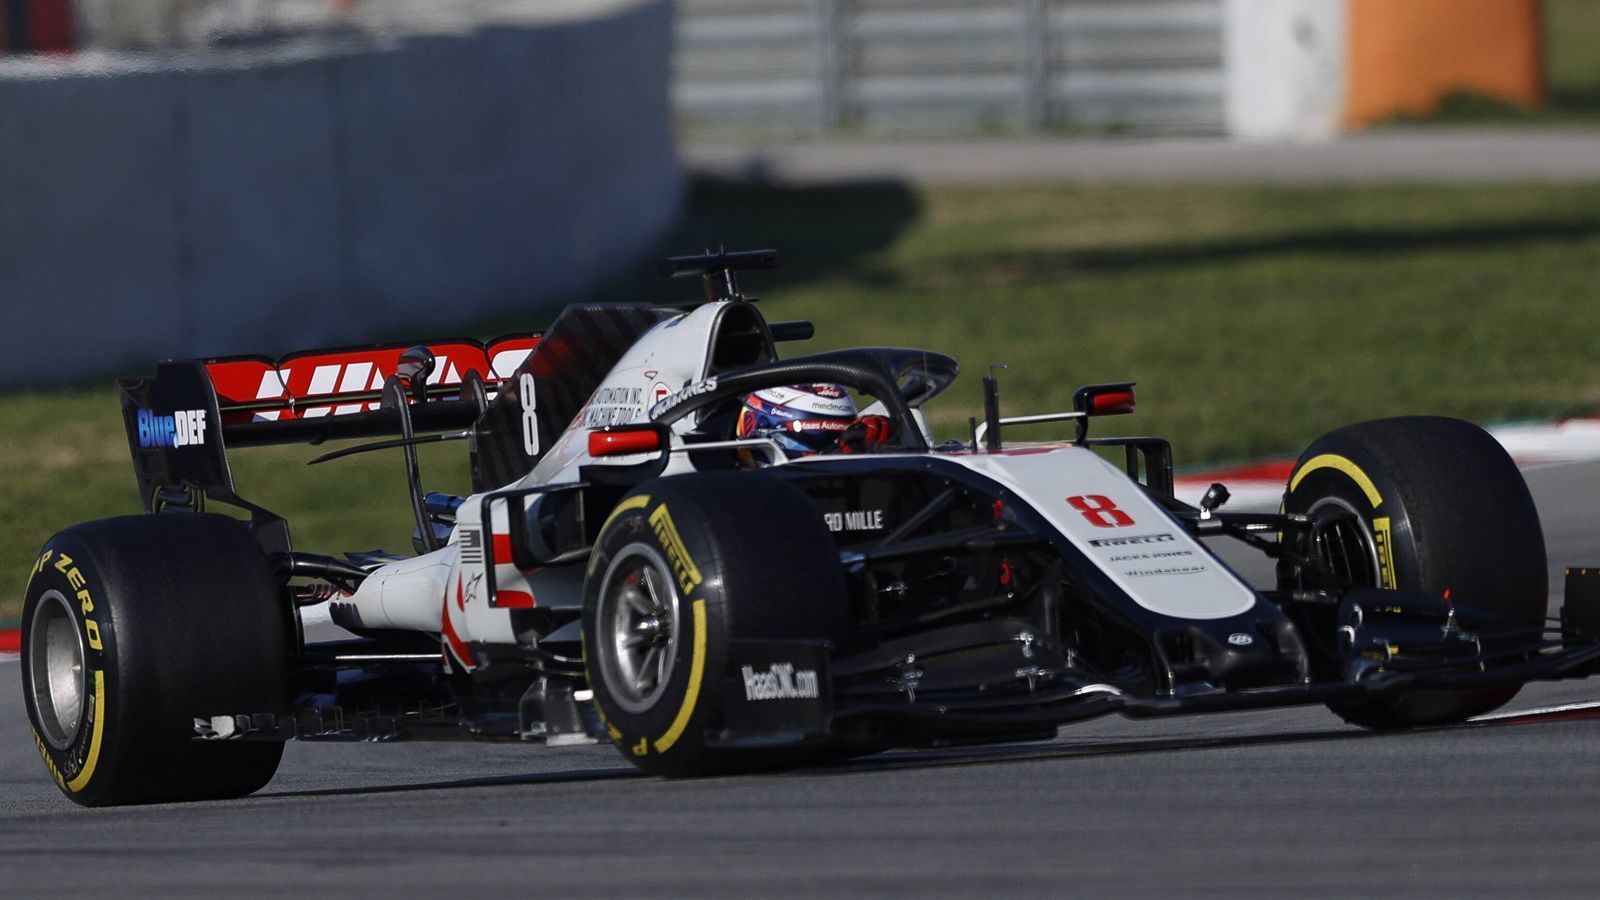 
                <strong>Verlierer: Haas F1</strong><br>
                Die Saison 2019 verlief für Haas F1 irgendwo zwischen ernüchternd und desaströs. Zum Auftakt in Barcelona wurde es nur unwesentlich besser. Das Team spulte die wenigsten Runden ab, zum Abschluss gab es dann auch noch sinnbildlich für die Situation einen Crash. Doch die Beteiligten bleiben positiv – schlimmer als 2019 kann es kaum werden. Wobei: Da konnte man zumindest Williams hinter sich lassen. Doch selbst das ist ja nicht mehr sicher.
              